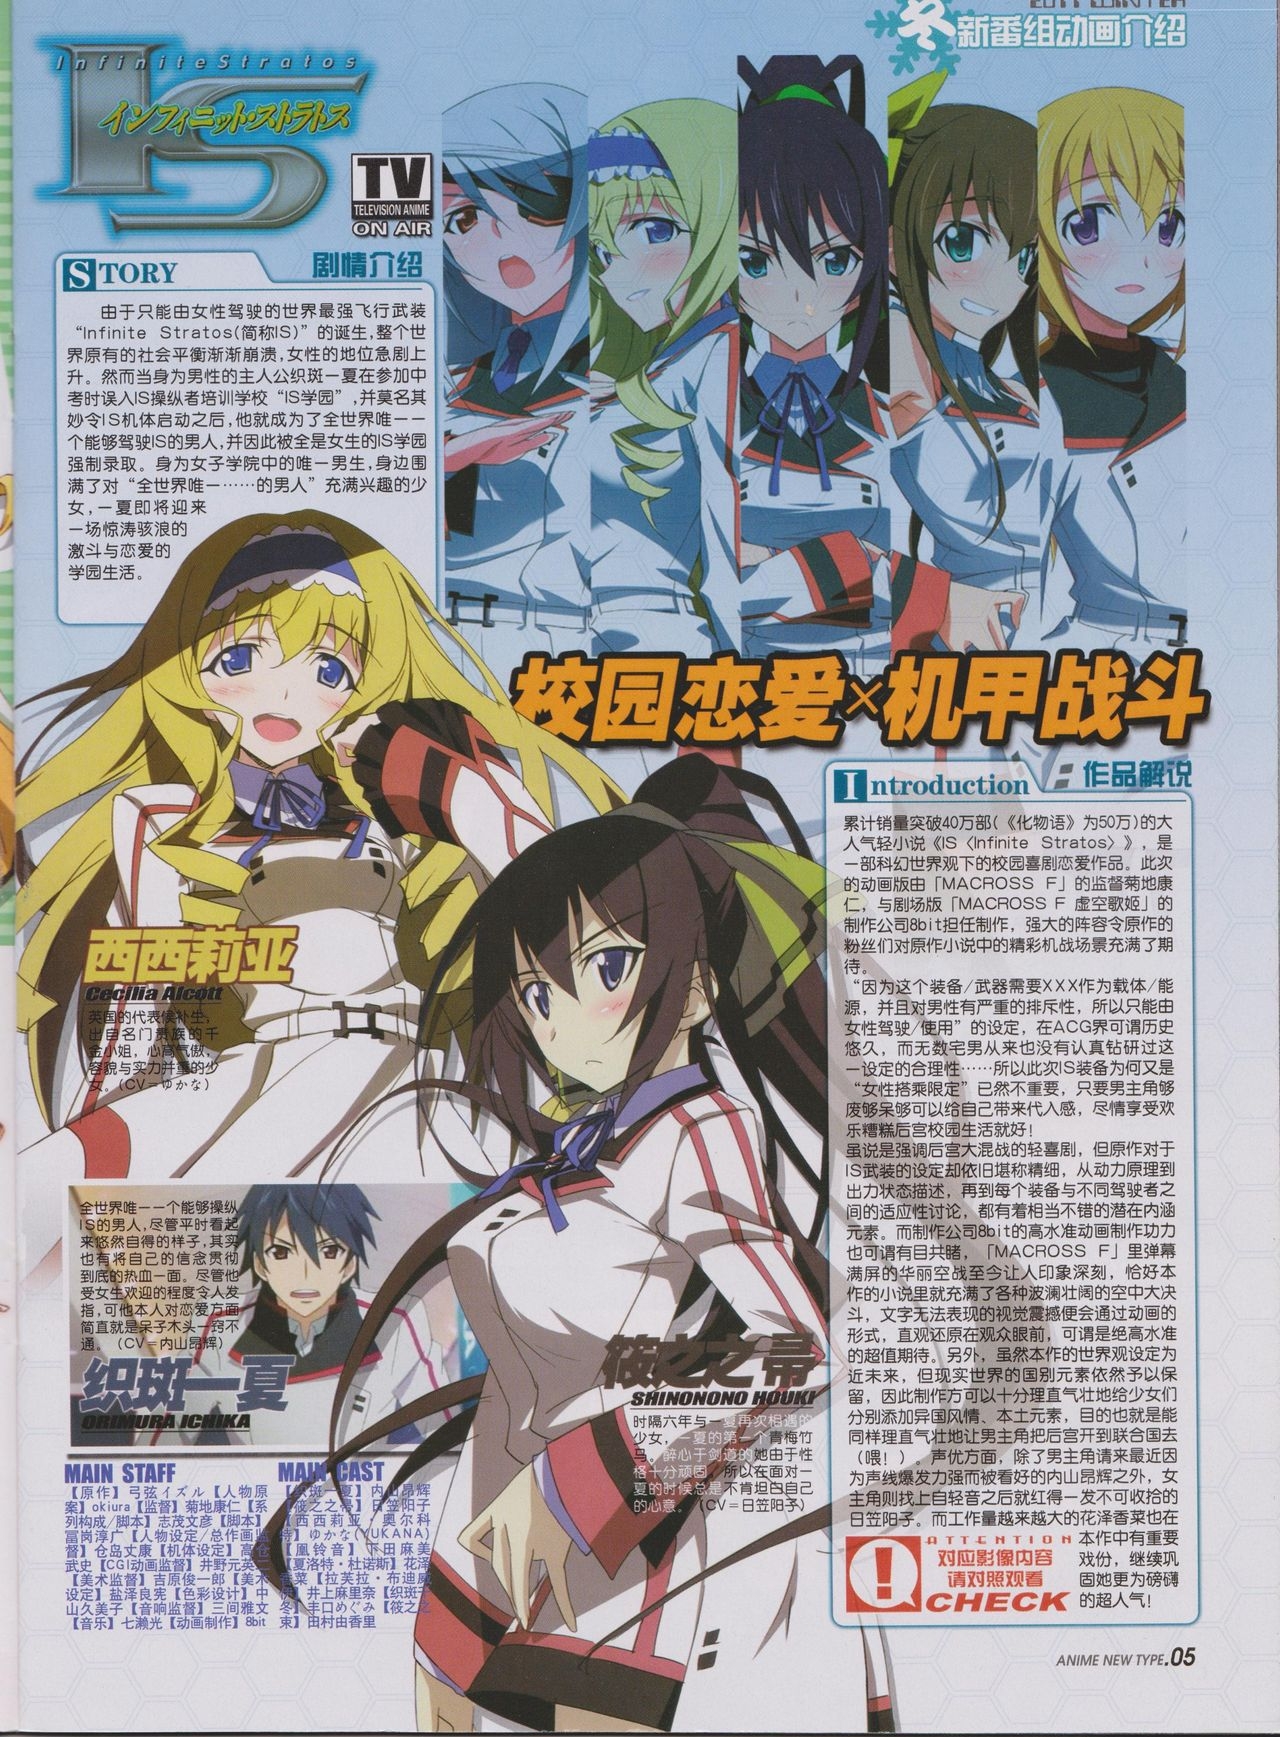 Anime New Type Vol.096 6